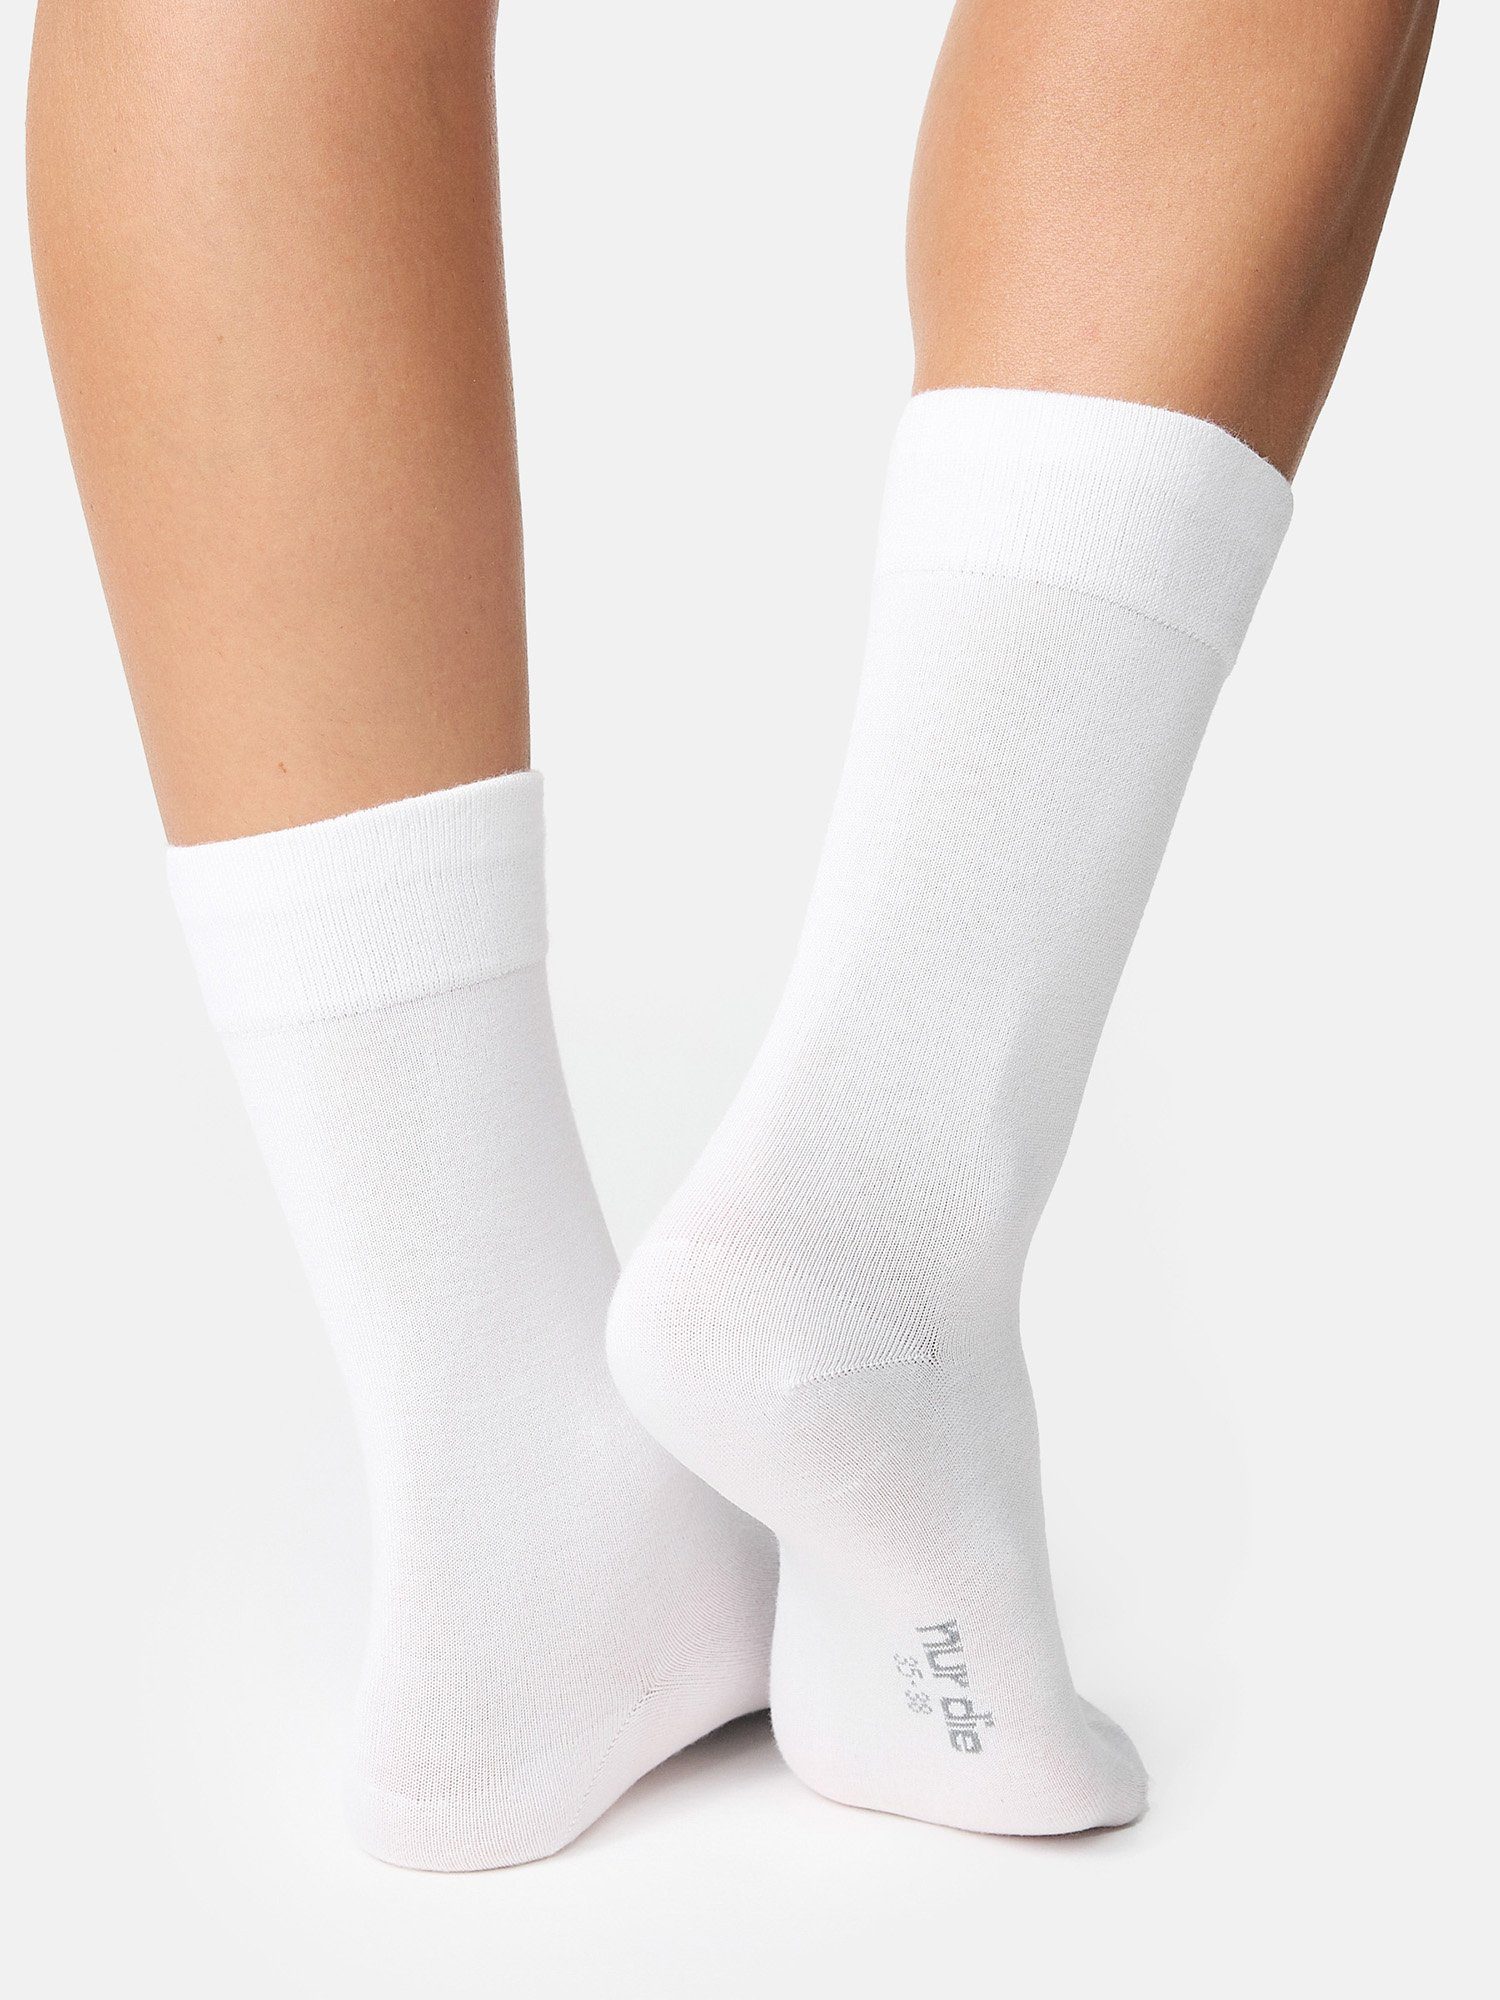 Nur Die Basicsocken Komfort günstig uni Bund weiß (8-Paar) Socken